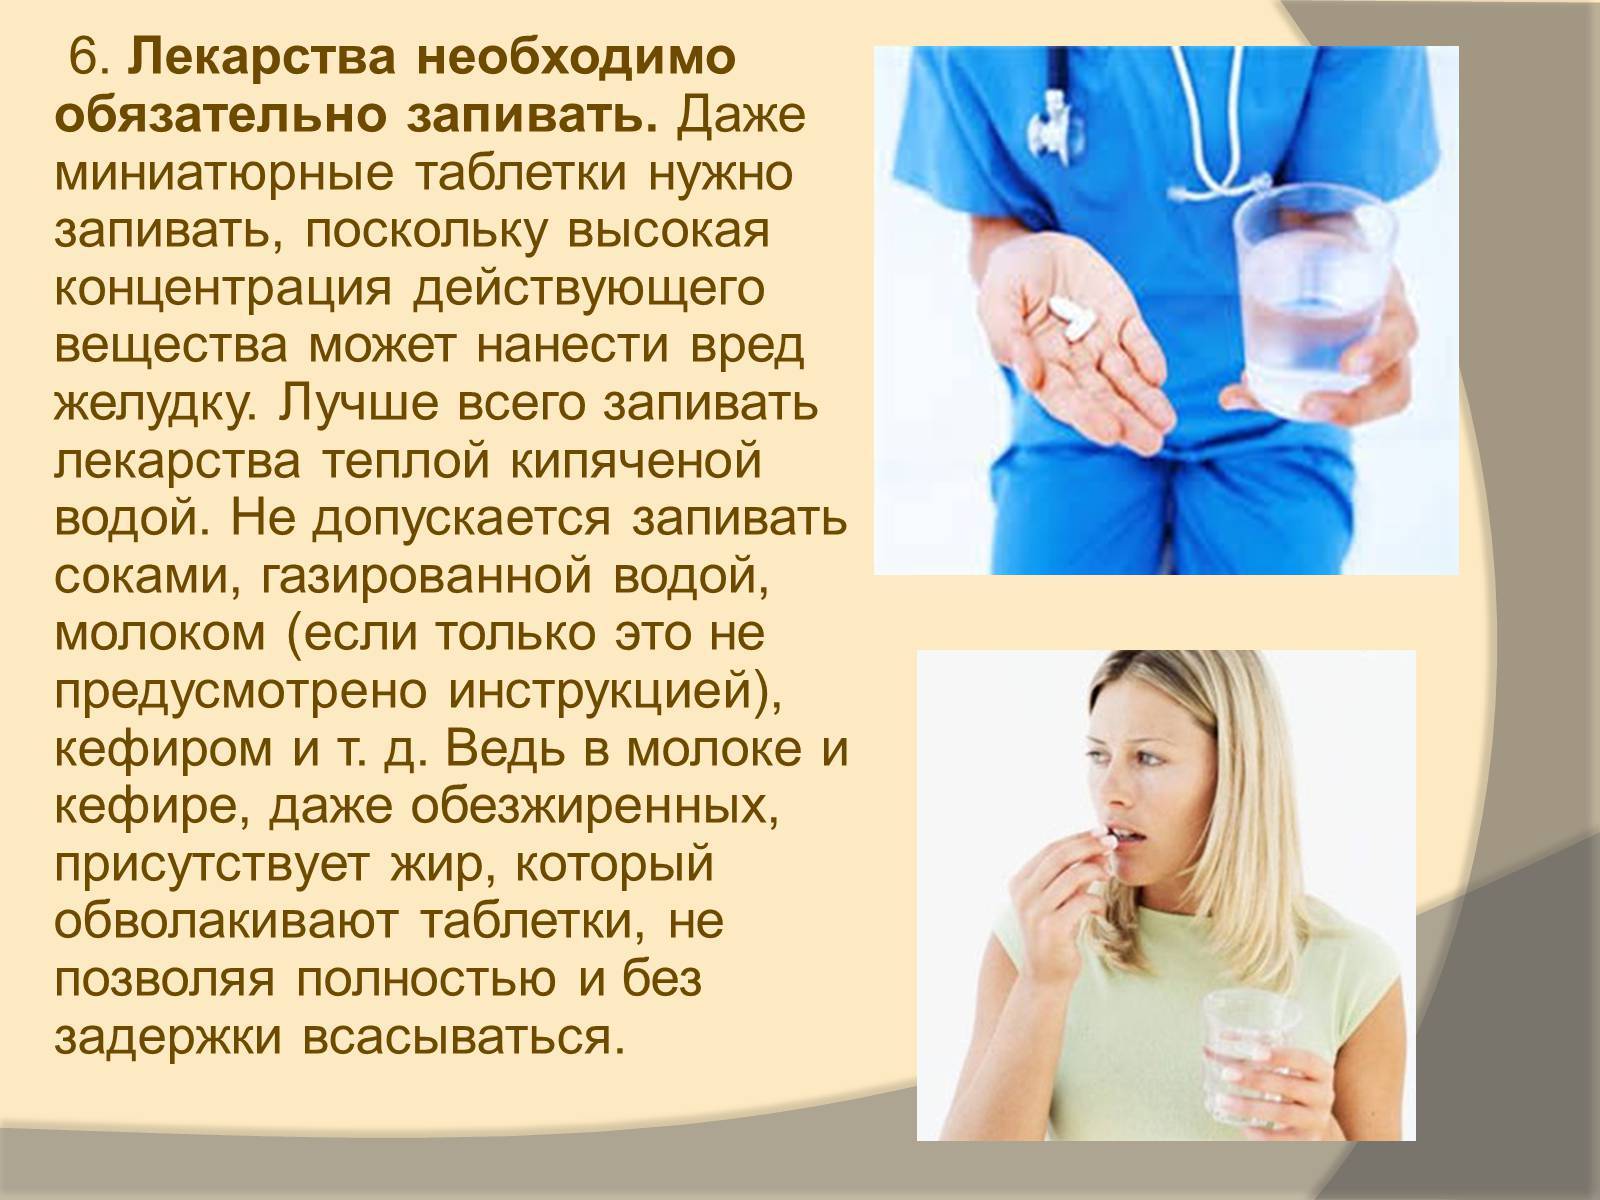 Какие еду и напитки нельзя сочетать с лекарствами? - медикаменты - медицина и здоровье - жизнь в москве - молнет.ru